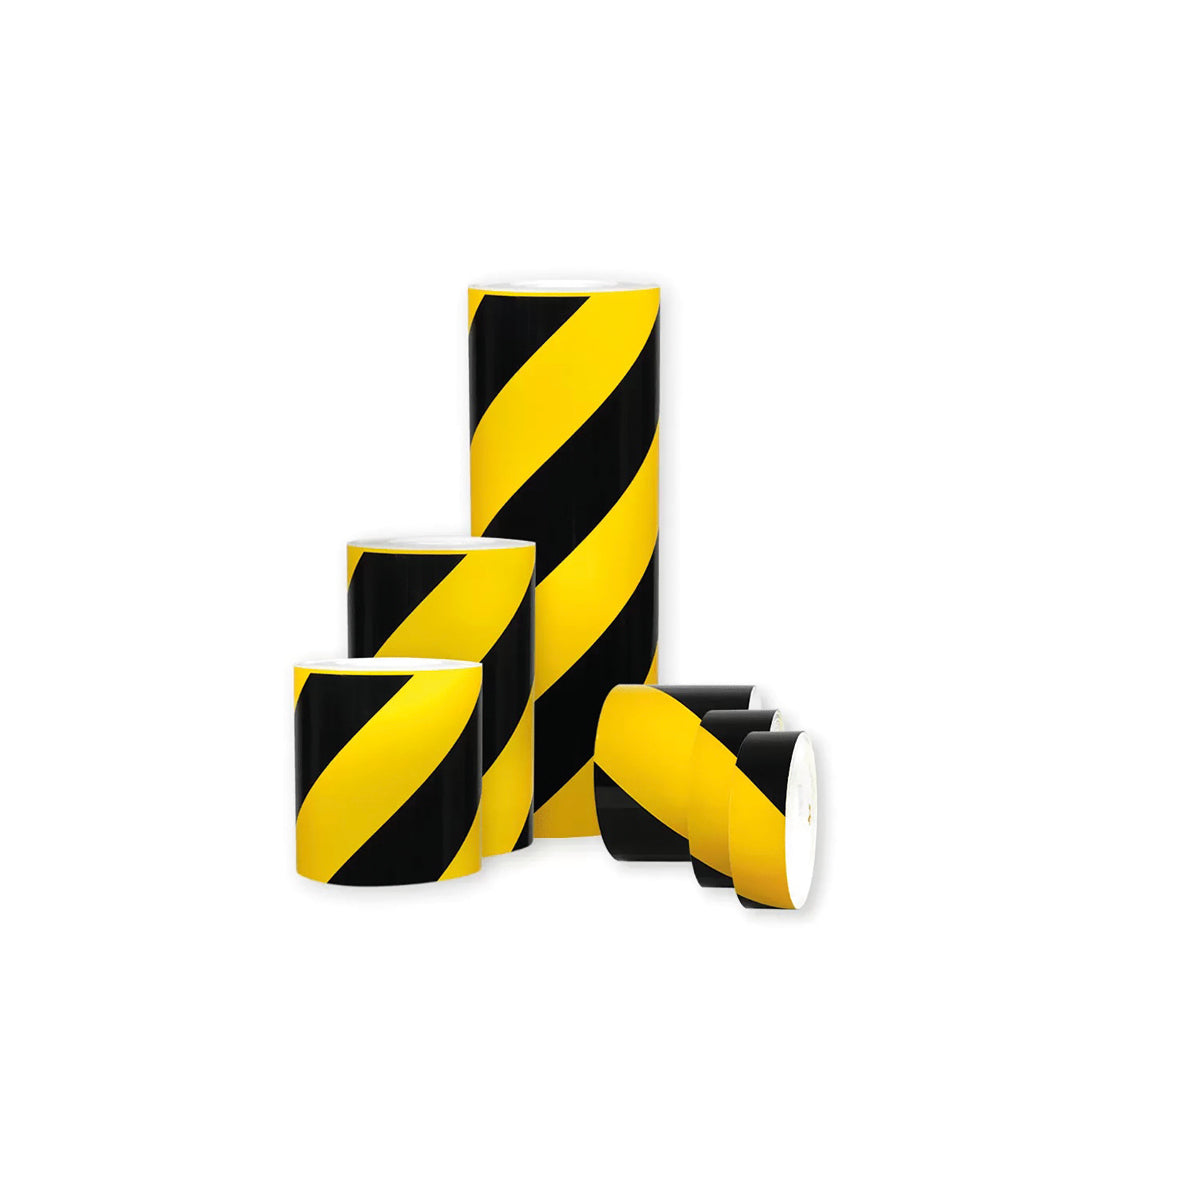 Warnmarkierungsband R1, für Fahrzeuge, R1, gelb-schwarz, 10 m x 200 mm, rechtsweisend